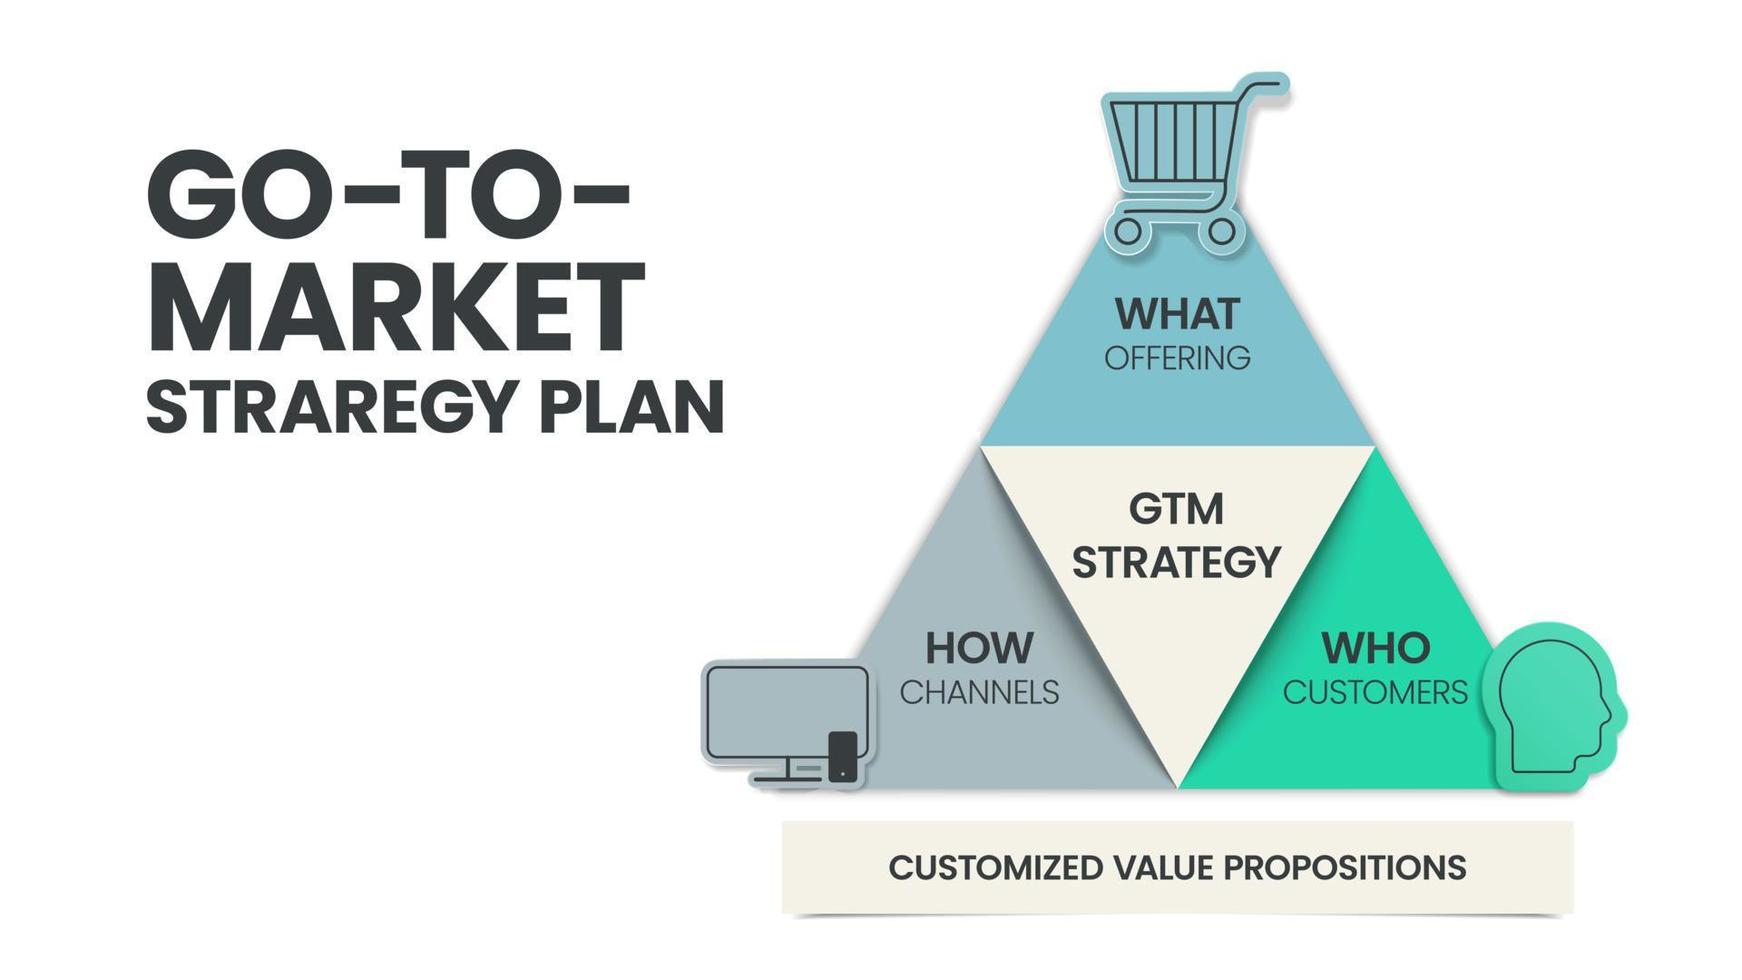 gtm o andare al mercato strategia e Piano piramide Infografica modello ha 3 passaggi per analizzare come come che cosa - offerta, chi - i clienti e Come - canali. attività commerciale e marketing diapositiva per presentazione. vettore